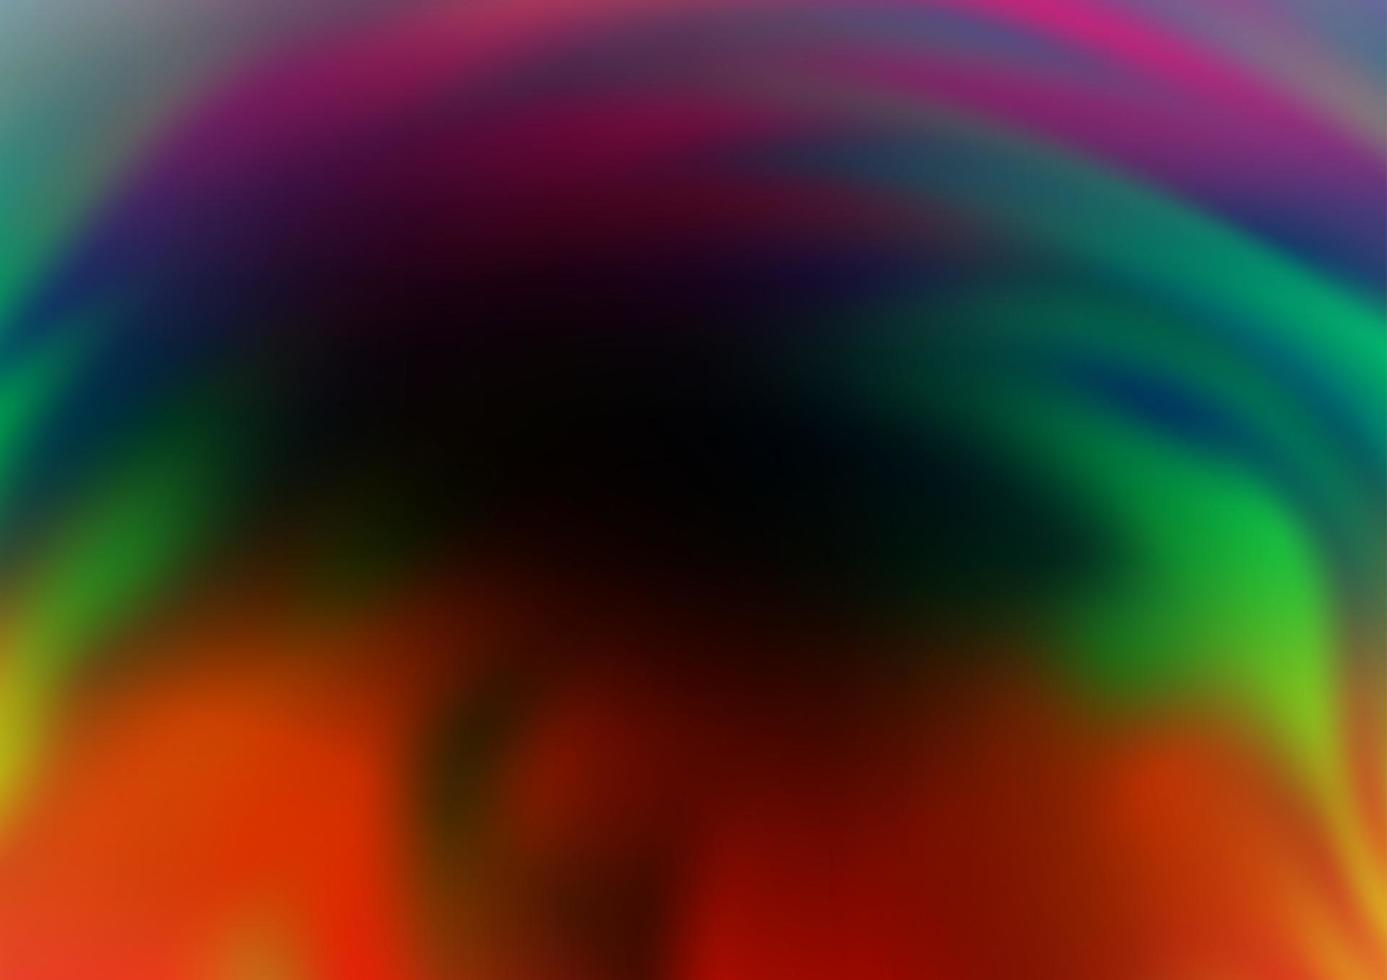 dunkle mehrfarbige, abstrakte helle Schablone des Regenbogenvektors. vektor